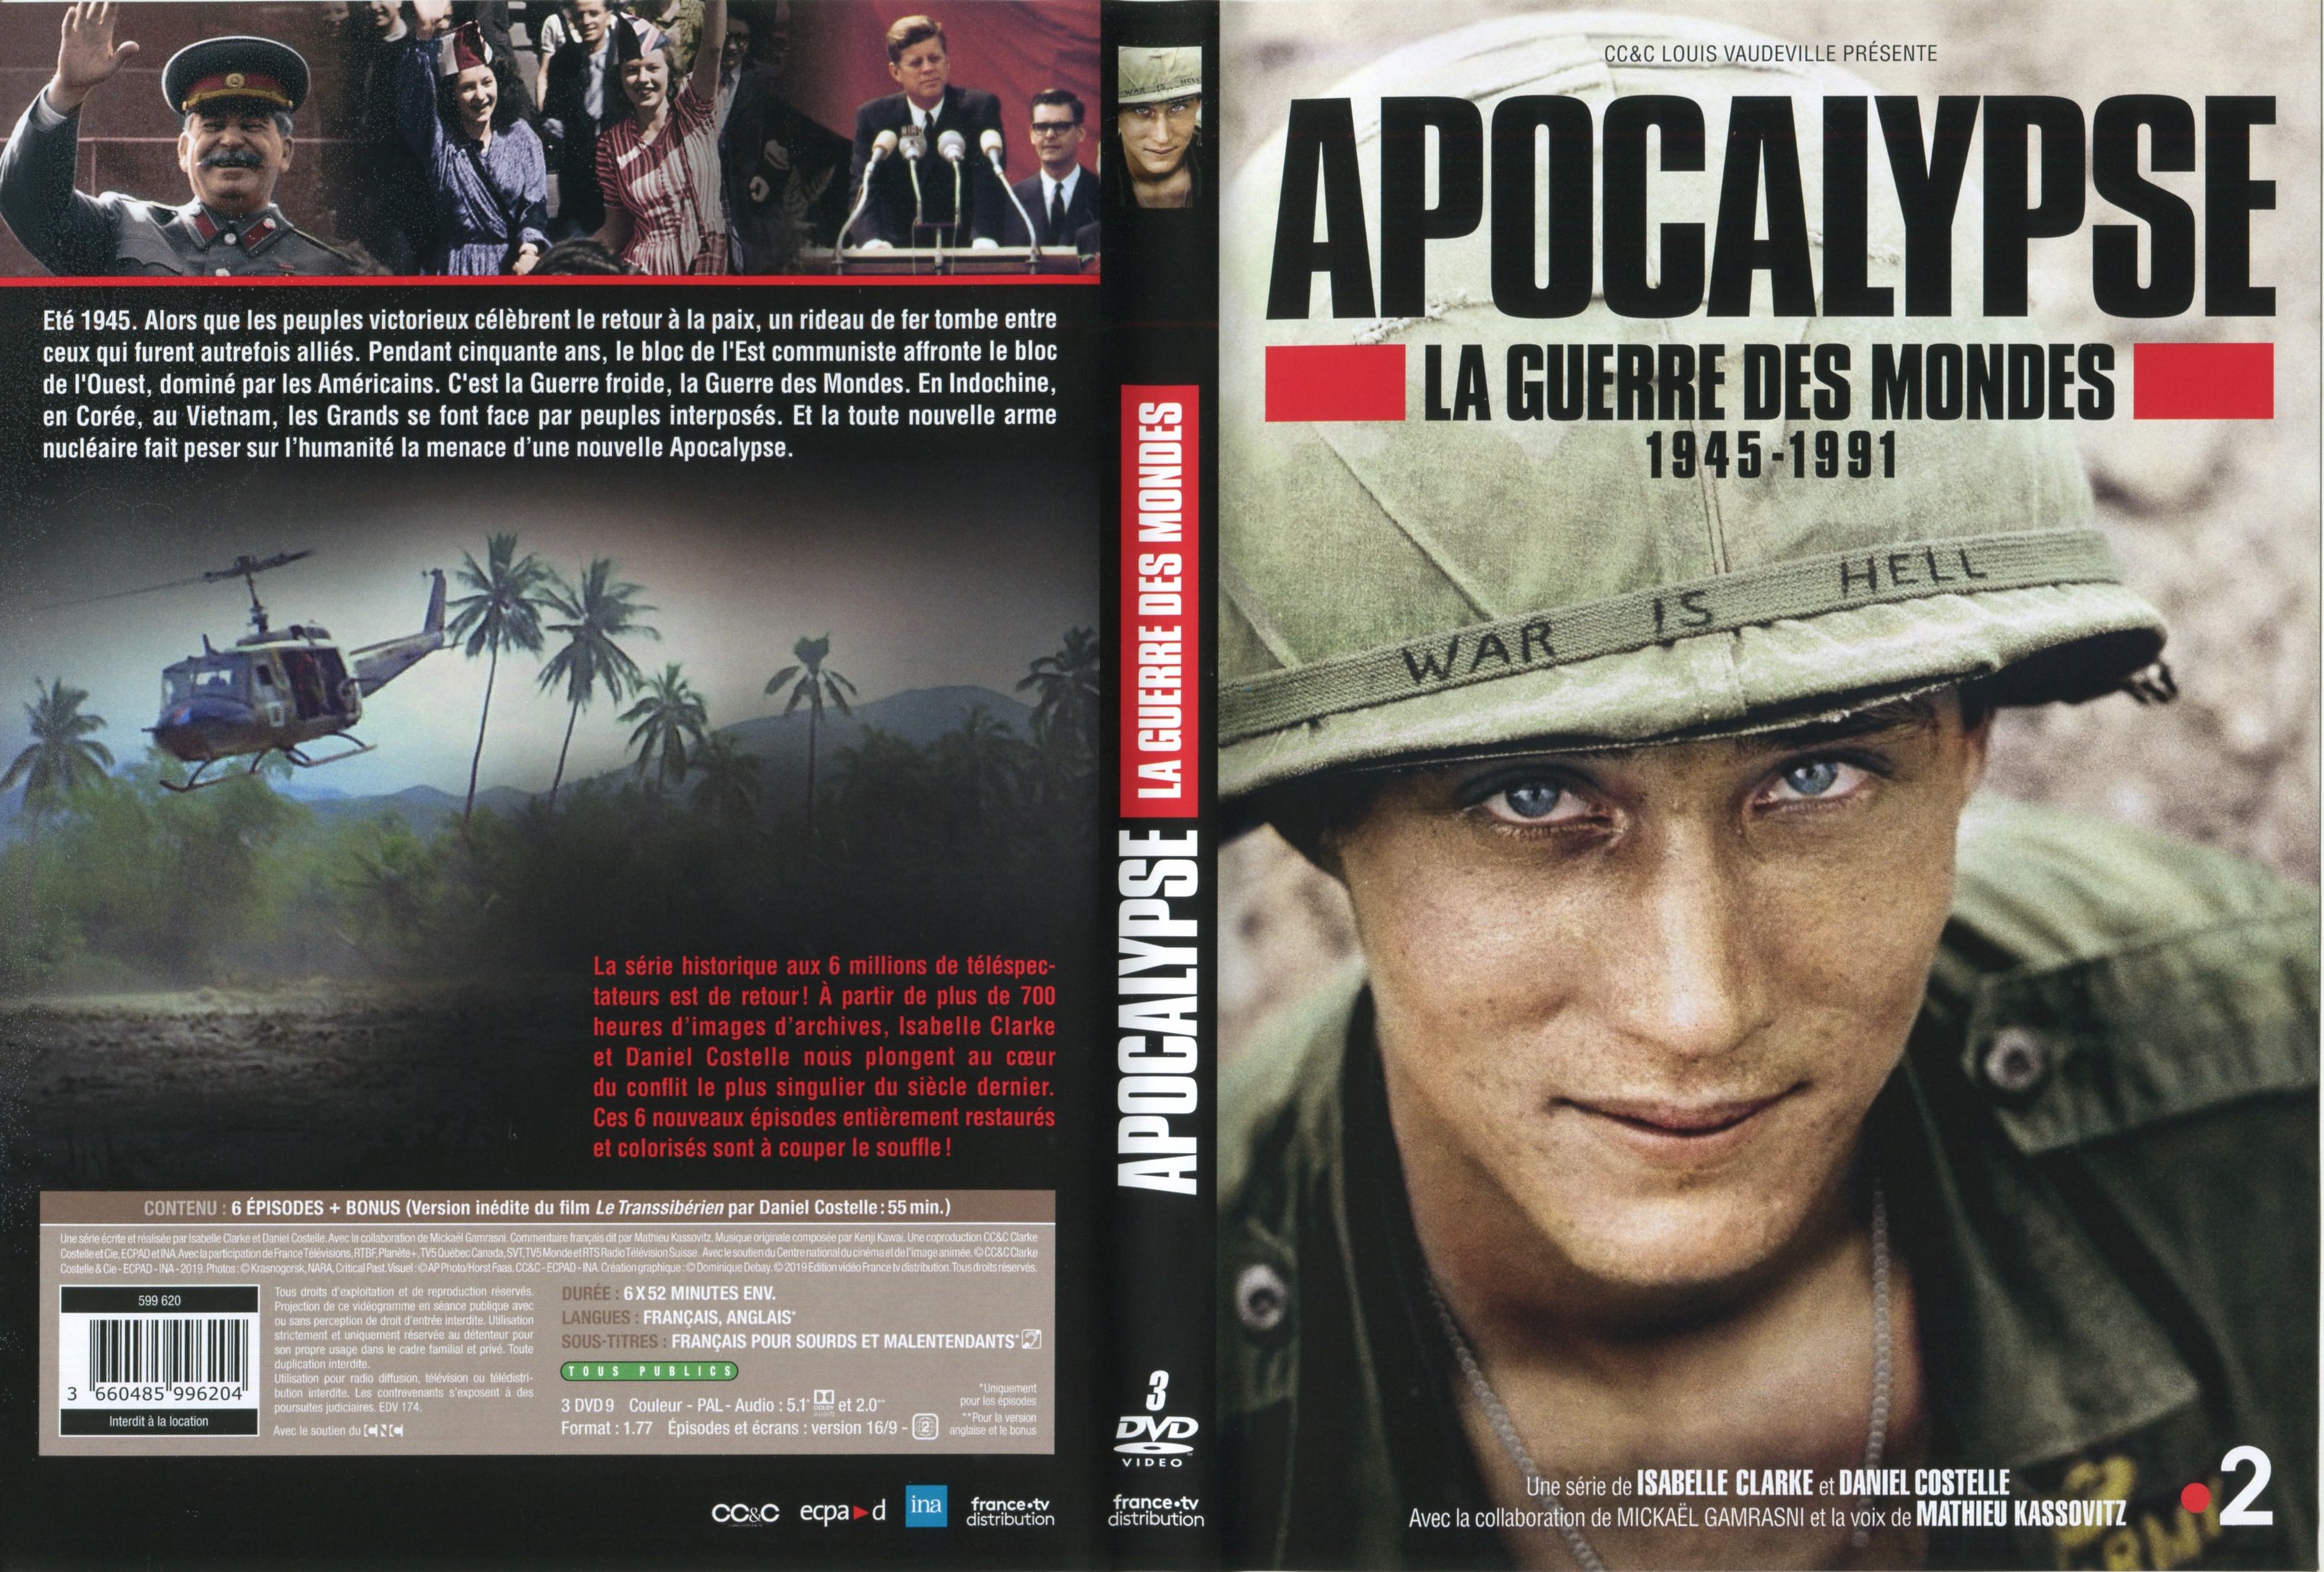 Jaquette DVD Apocalypse La guerre des mondes 1945-1991